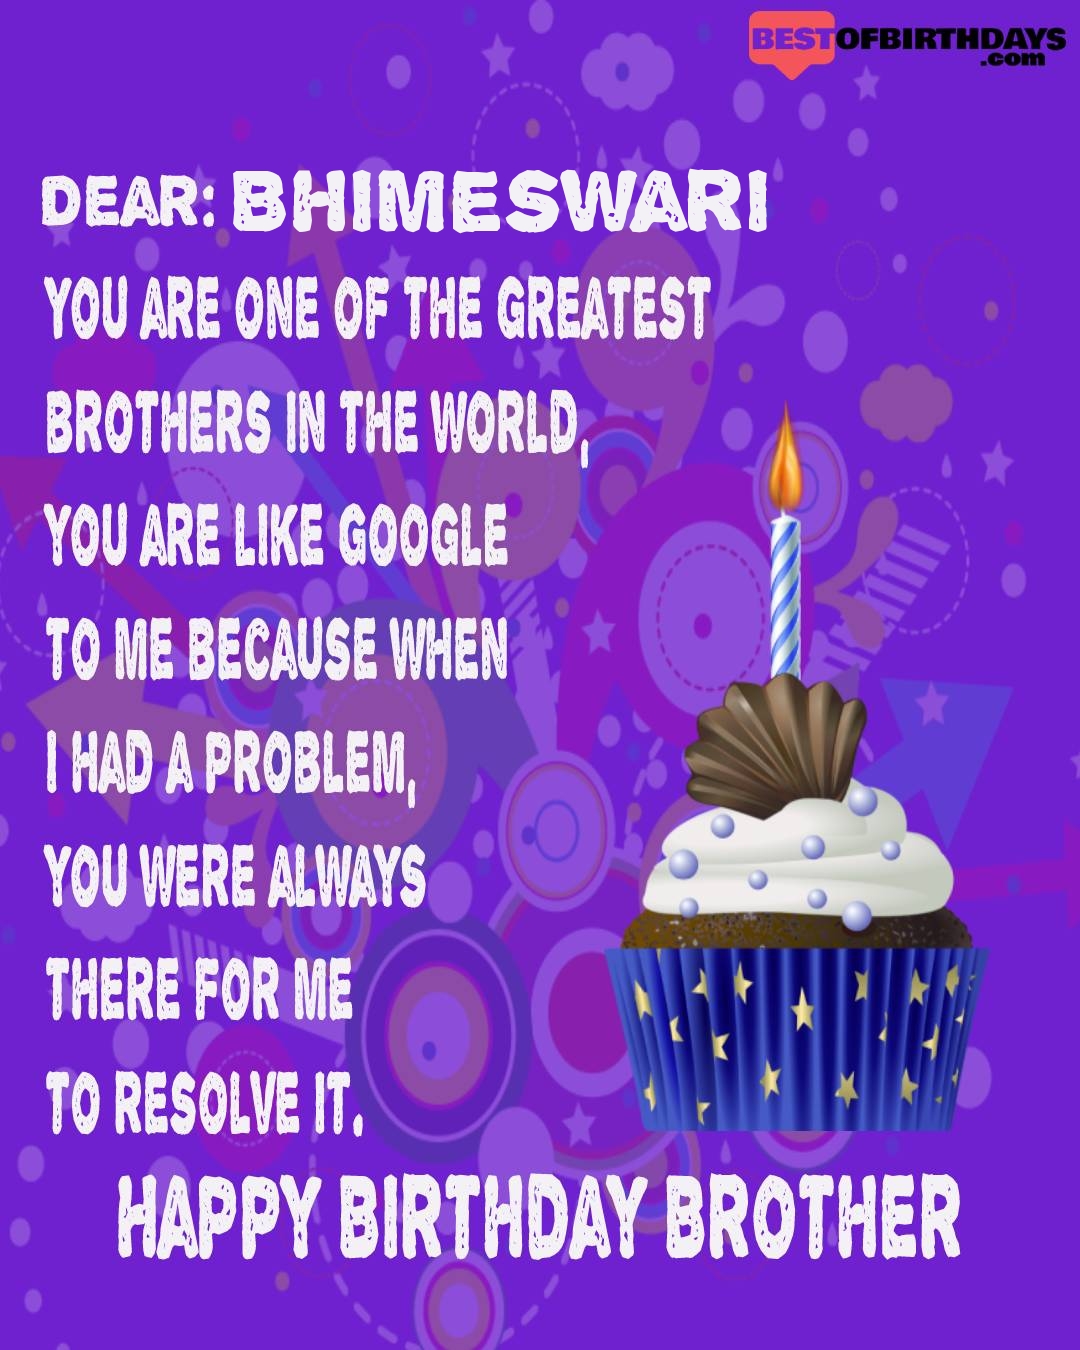 Happy birthday bhimeswari bhai brother bro